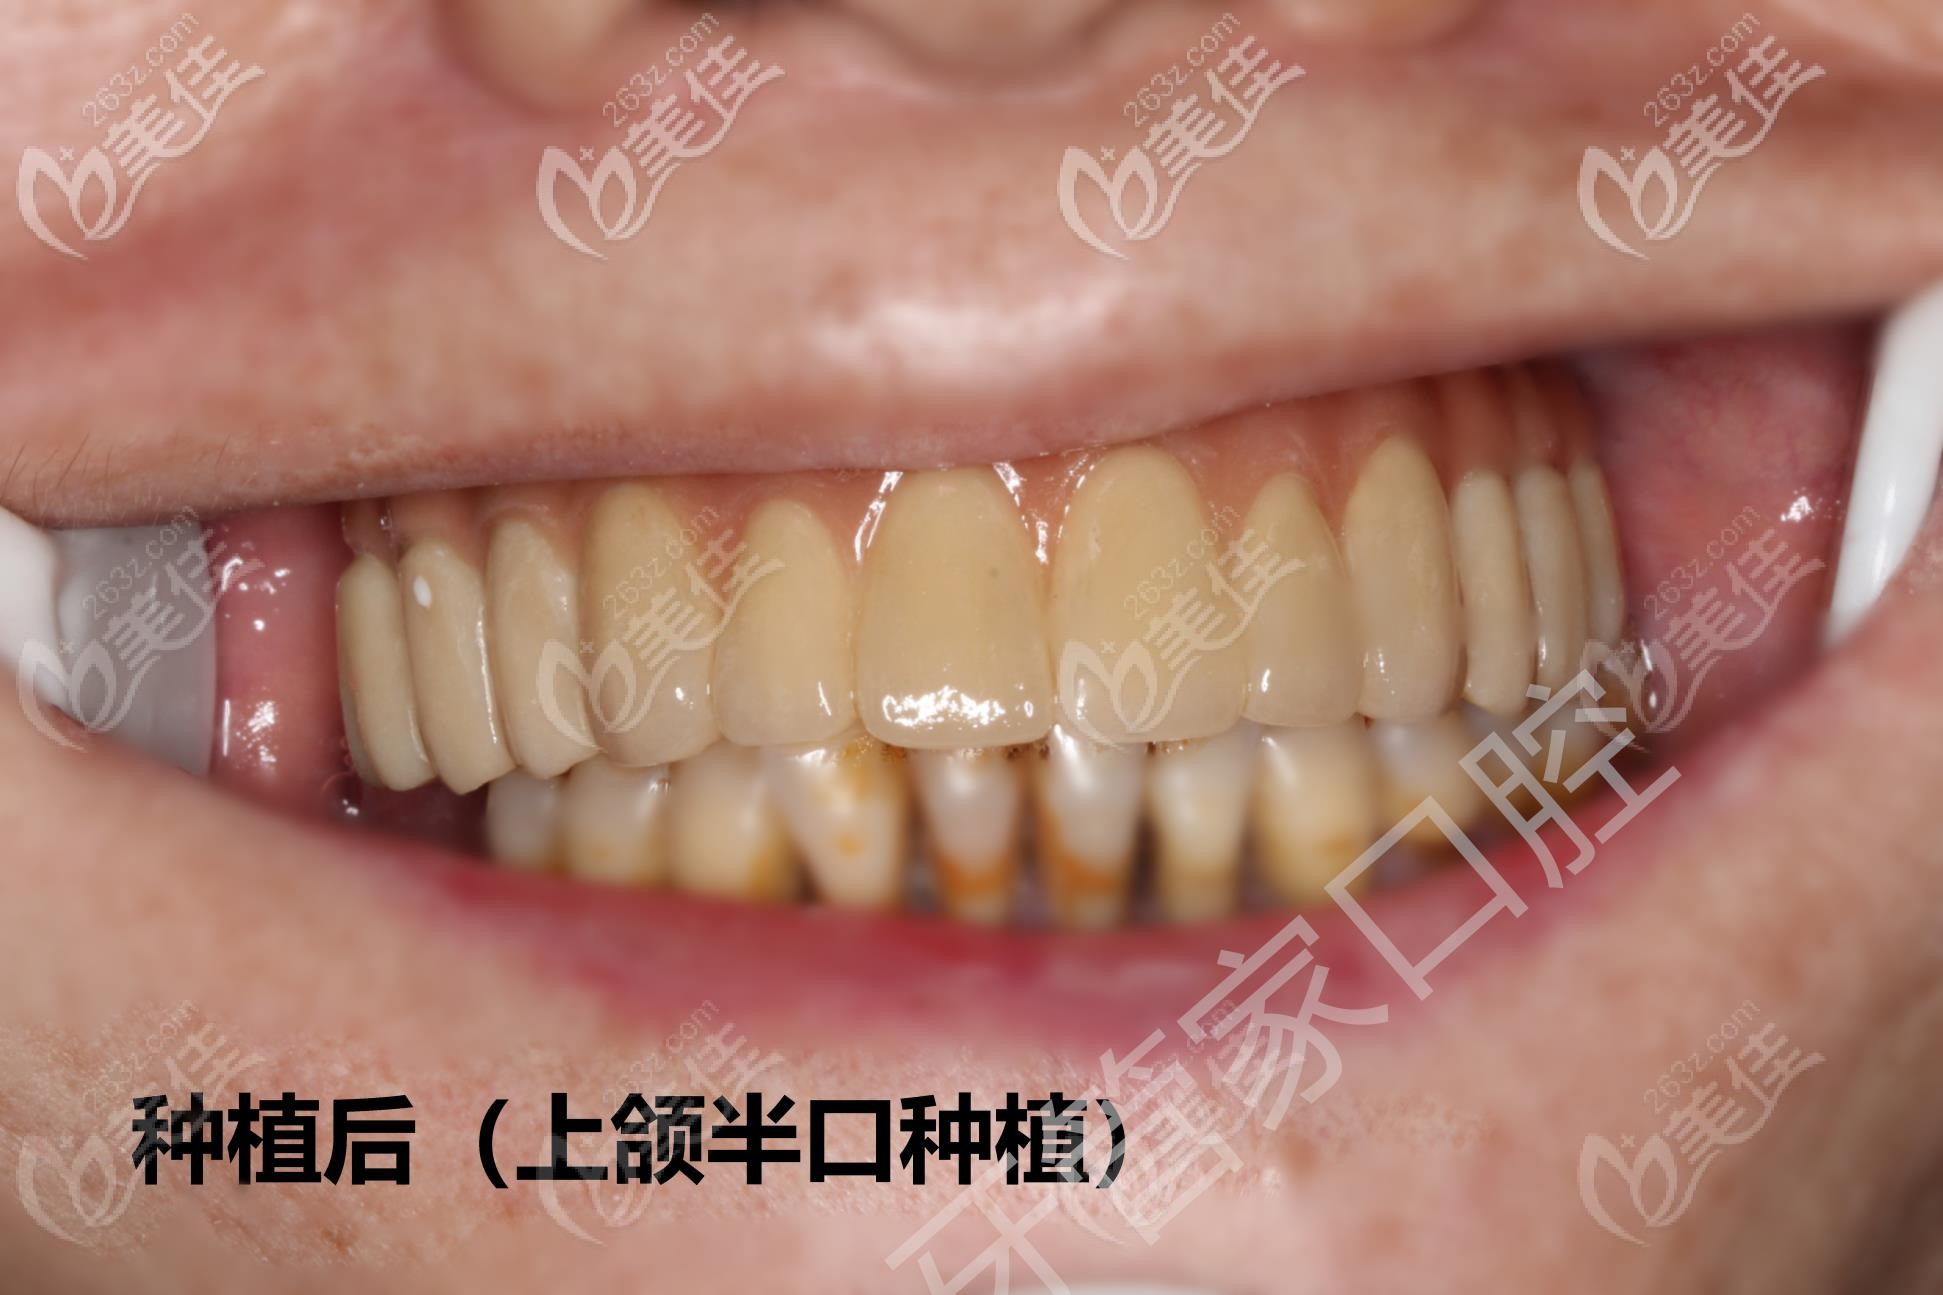 北京西城区的牙管家口腔医院做半口种植牙靠谱吗